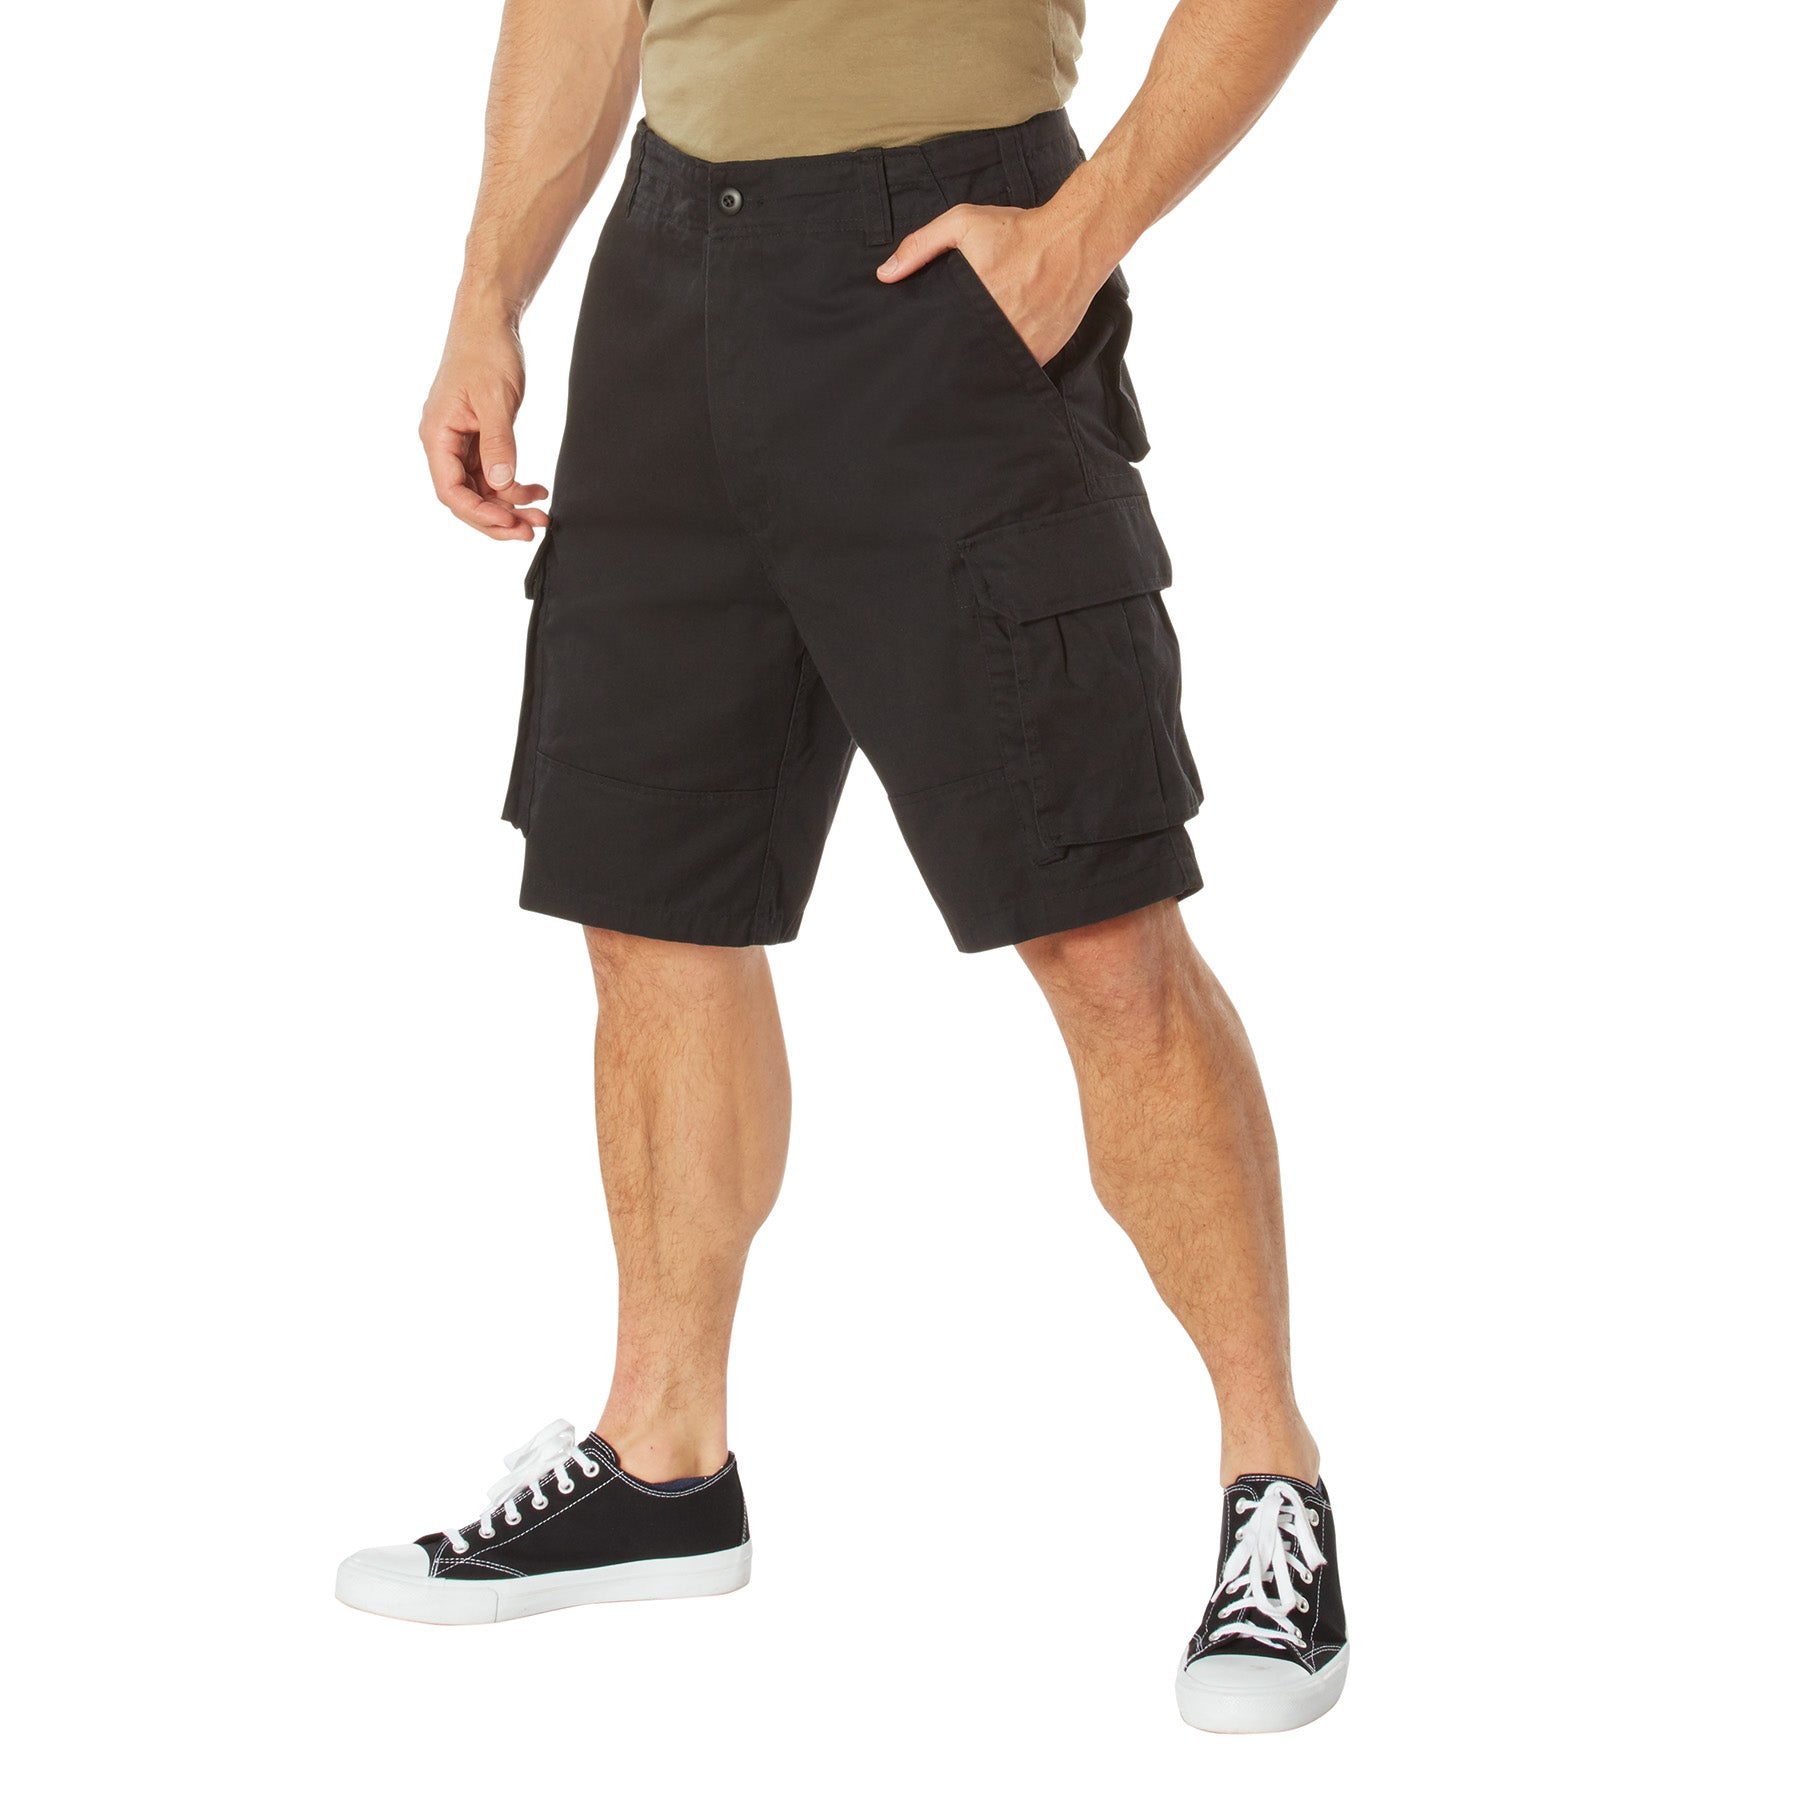 Cargo Bermuda shorts with modal